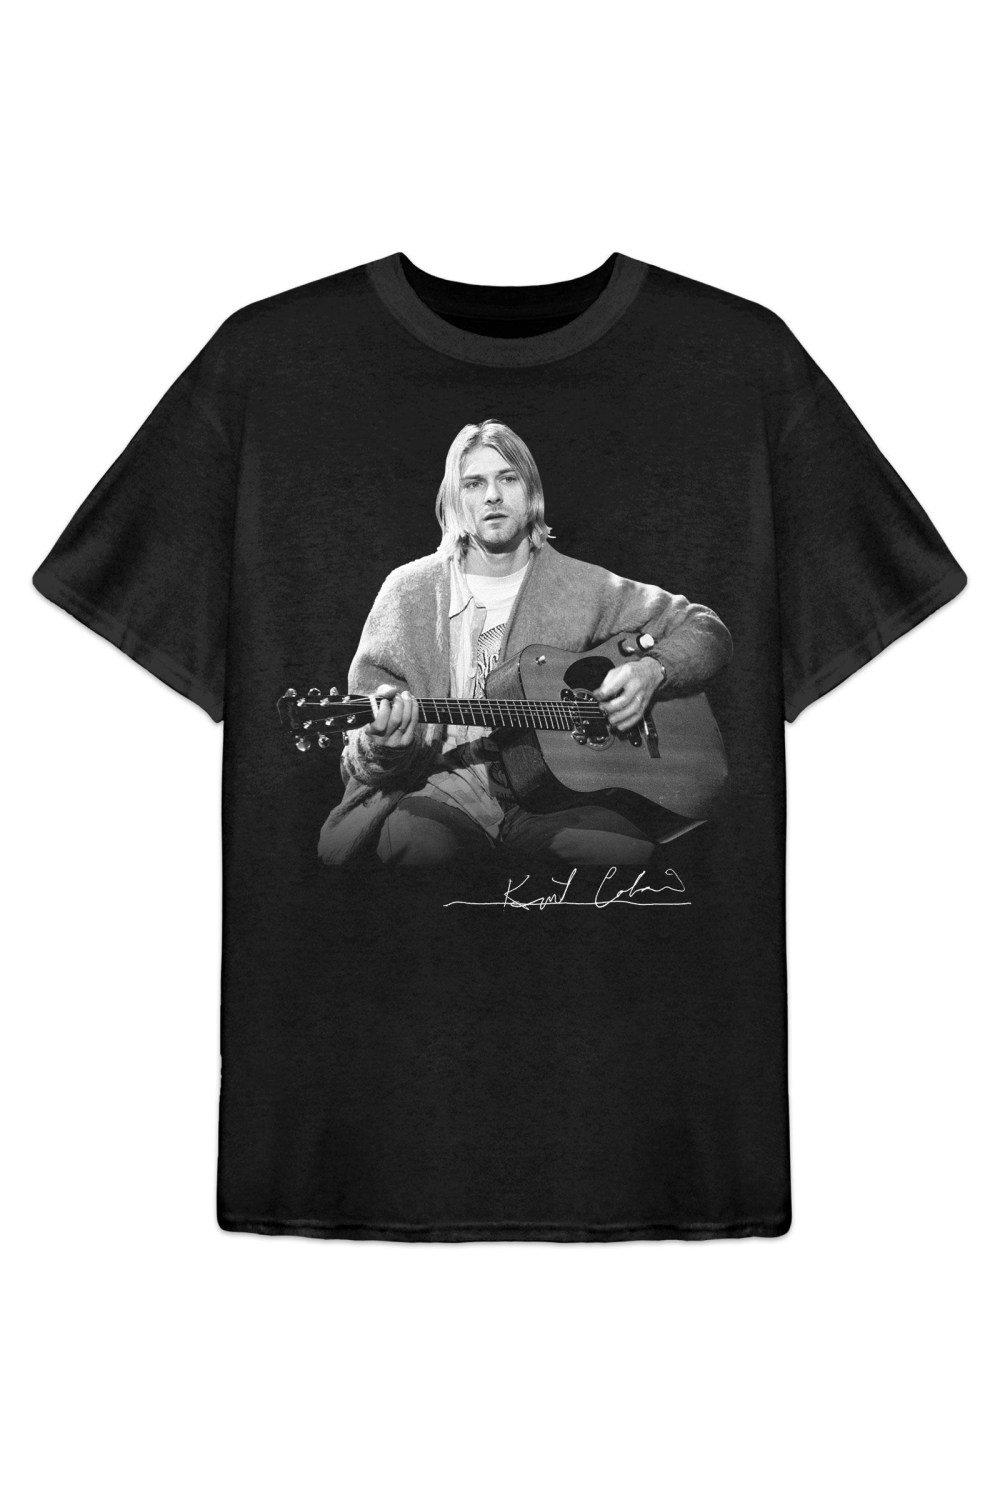 Хлопковая футболка для фотосессии с гитарой Live Kurt Cobain, черный 3x5 хартгес флаг полиэстер печатная фотография для декора